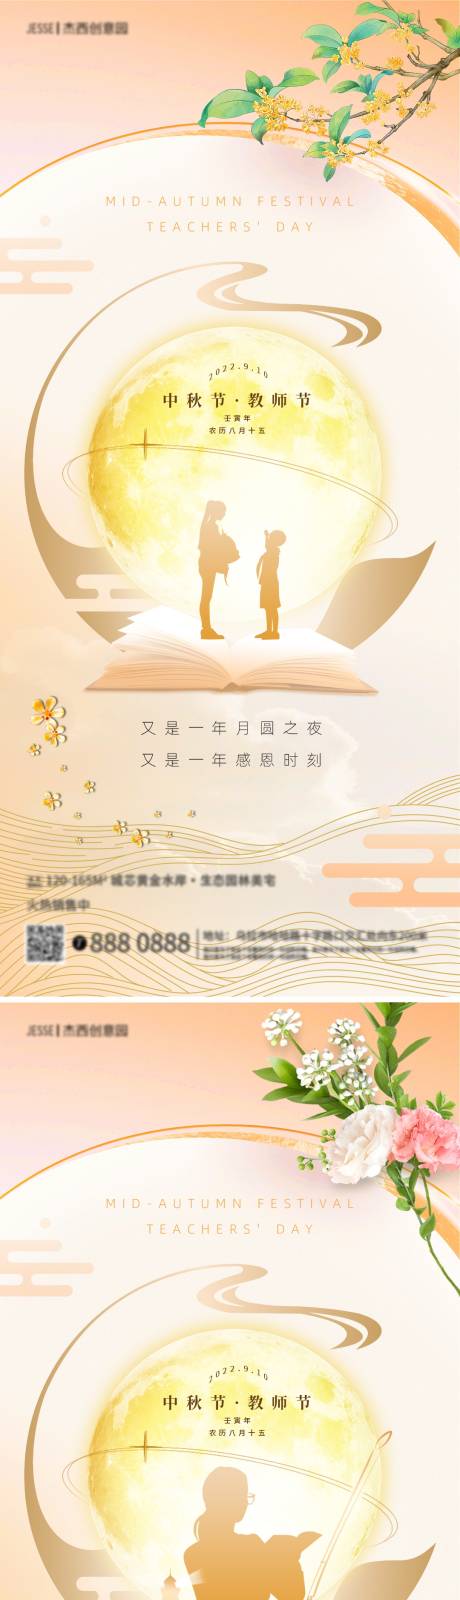 地产中秋节教师节海报